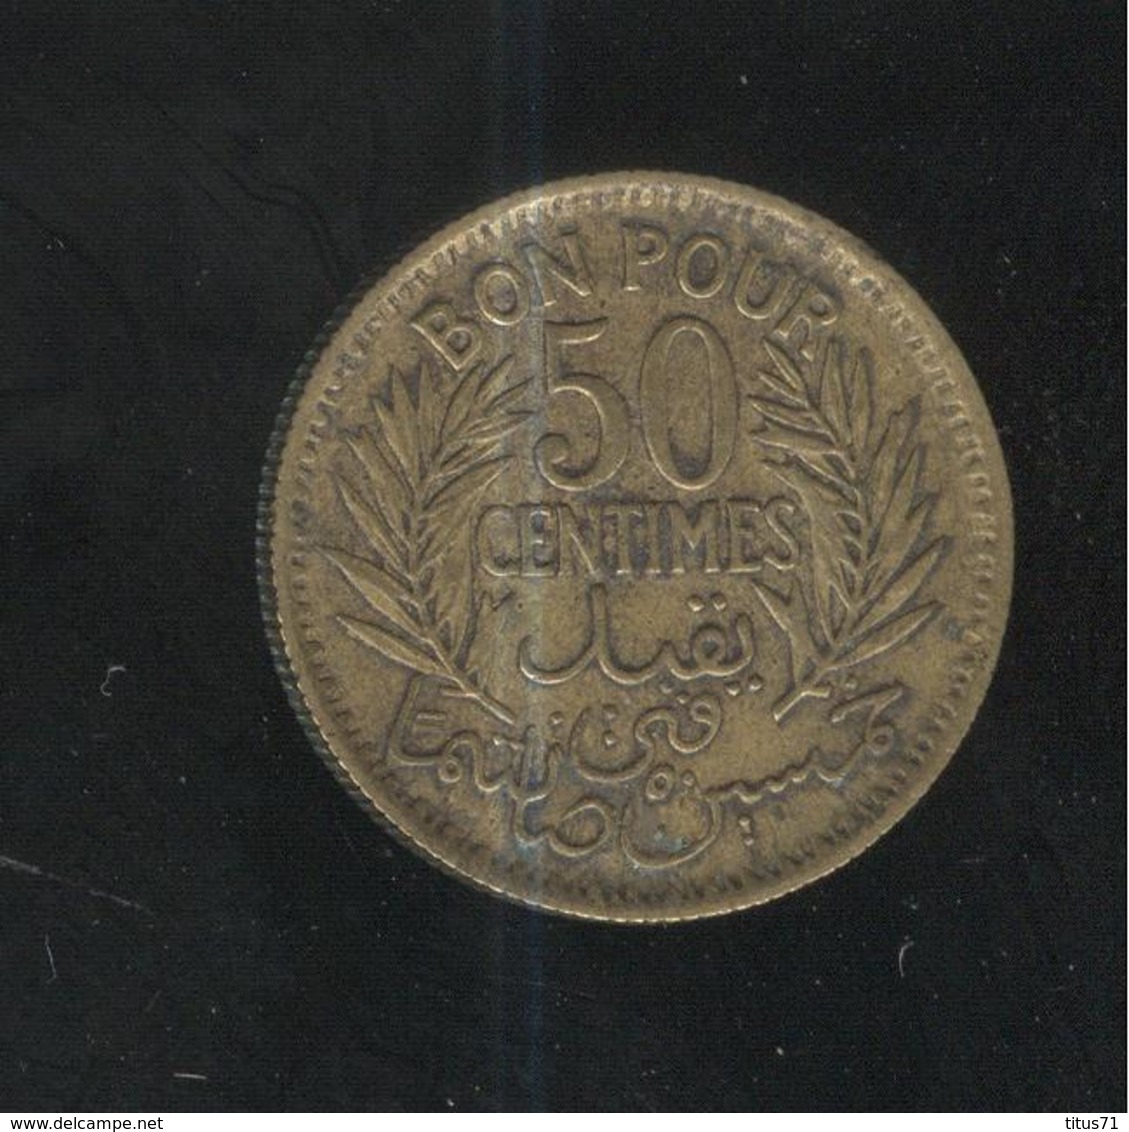 50 Centimes Tunisie 1945 - Tunisia